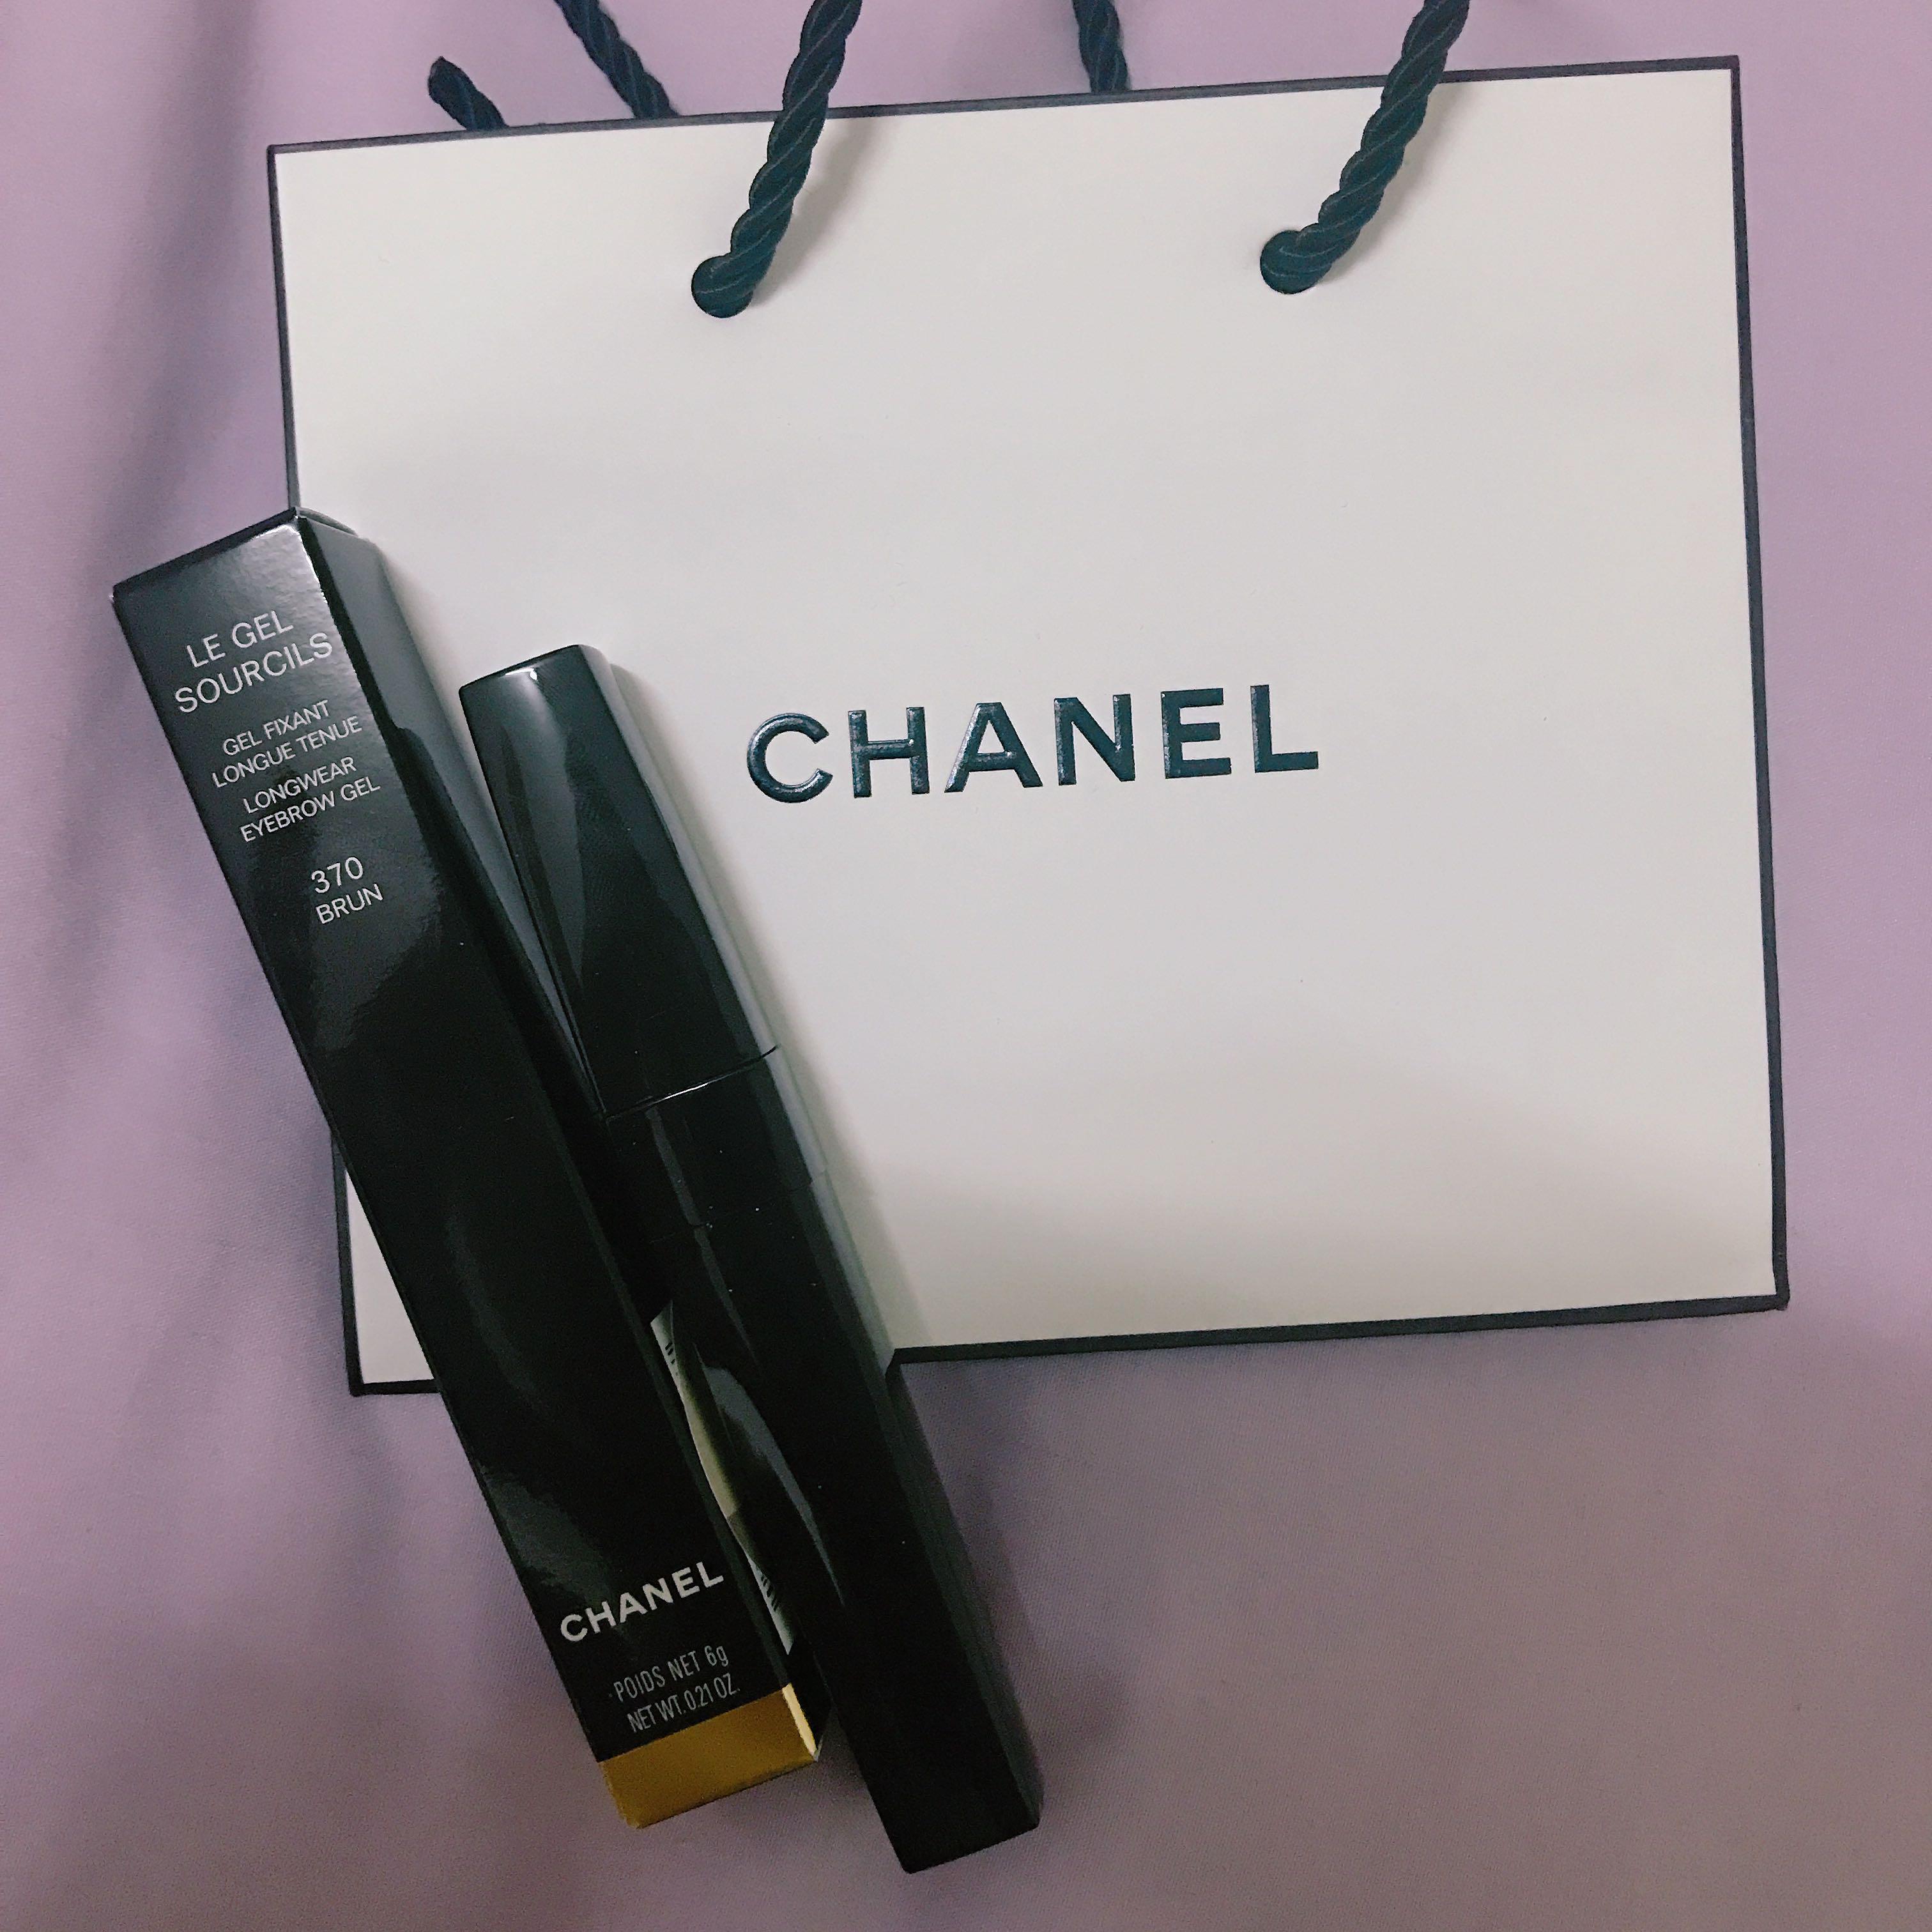 Chanel Le Gel Sourcils Longwear Eyebrow Gel, Brun, 0.21 Ounce